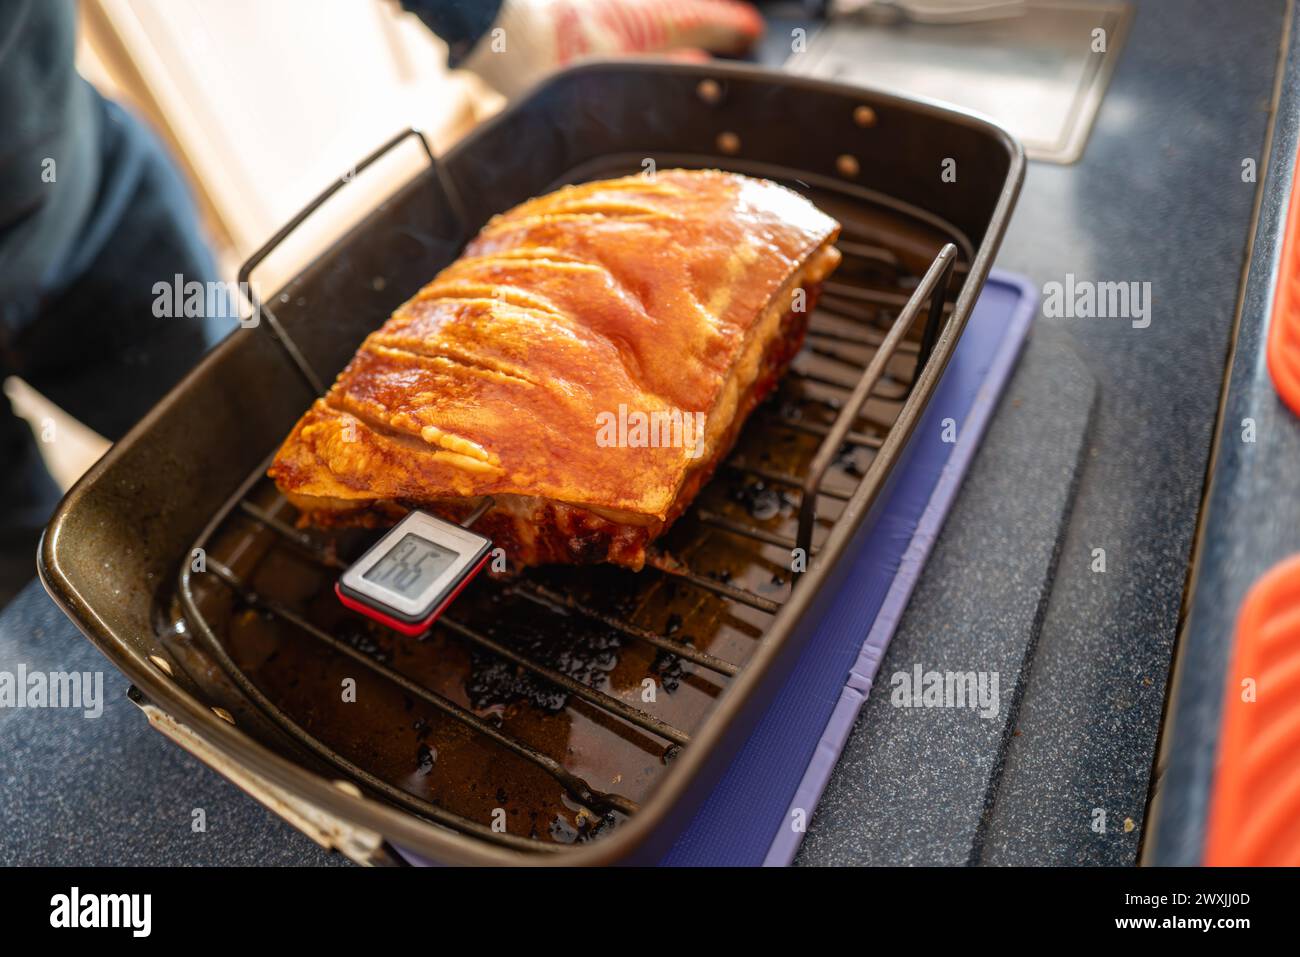 Oberflächlicher Fokus auf den Punkt, an dem ein Thermometer in einen Schweinelendchen eindringt, damit die Temperatur des gekochten Fleisches gemessen werden kann. Stockfoto